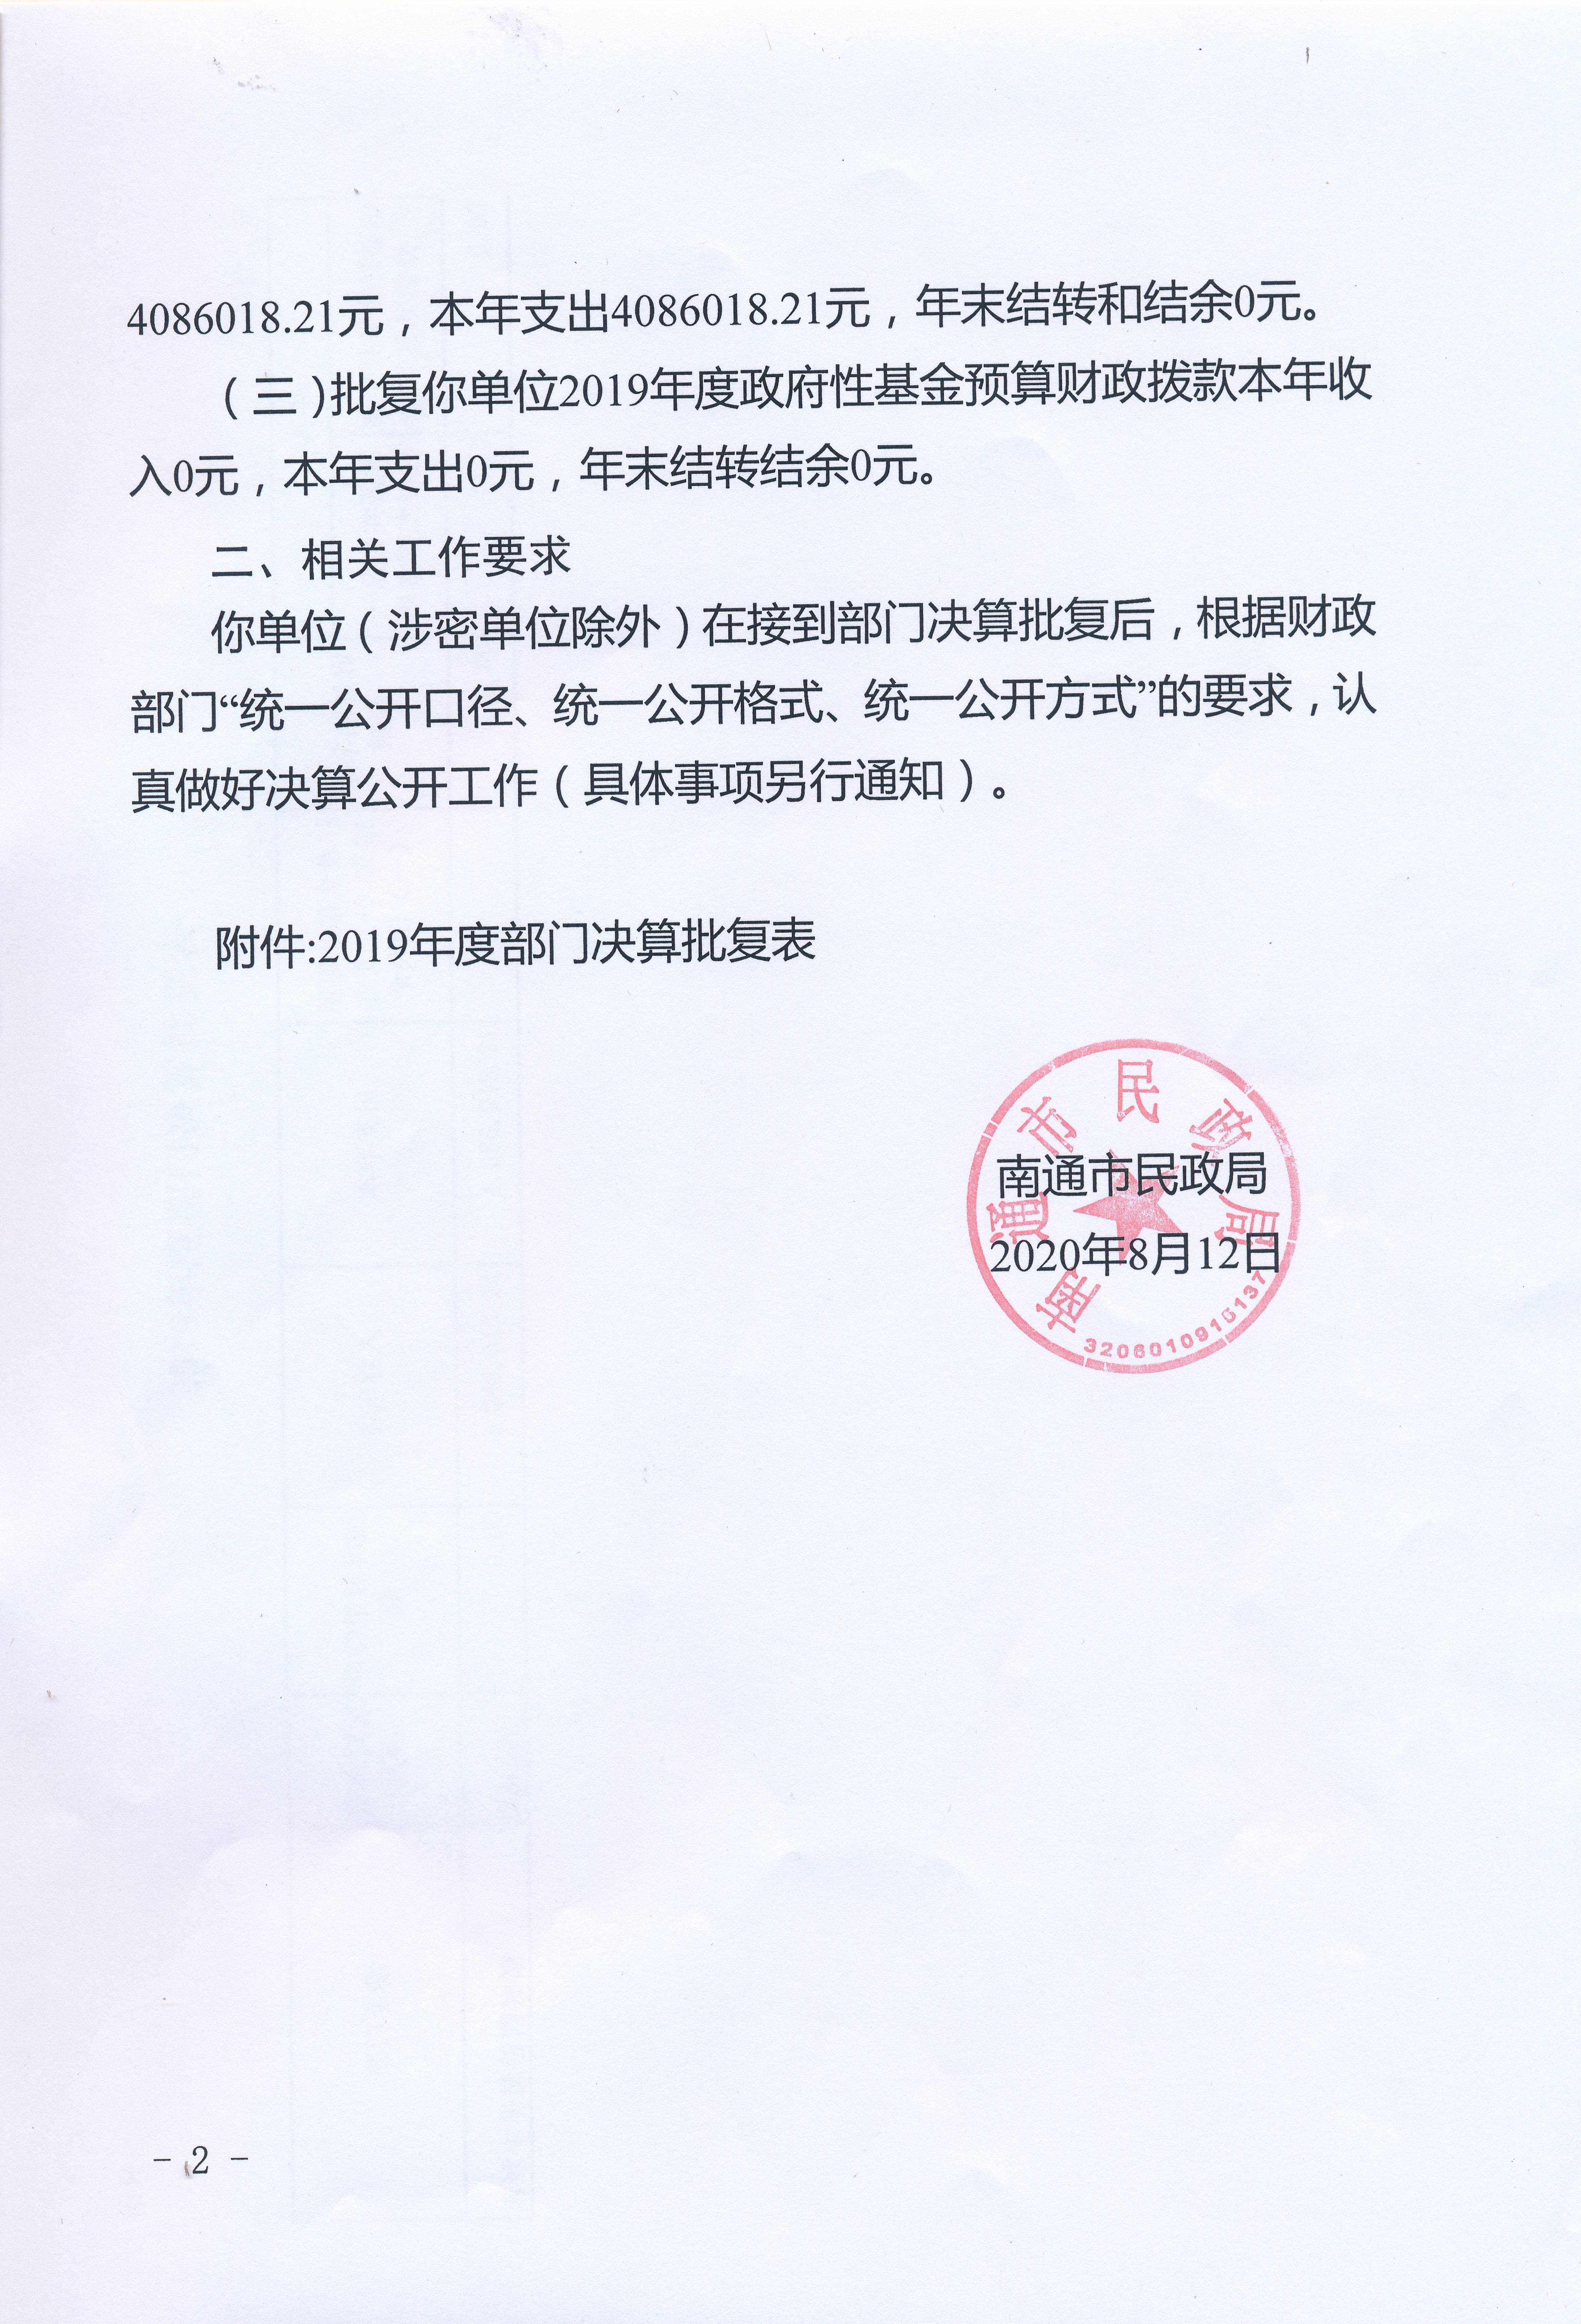 南通市民政局关于南通中华慈善博物馆2019年度部门决算的批复